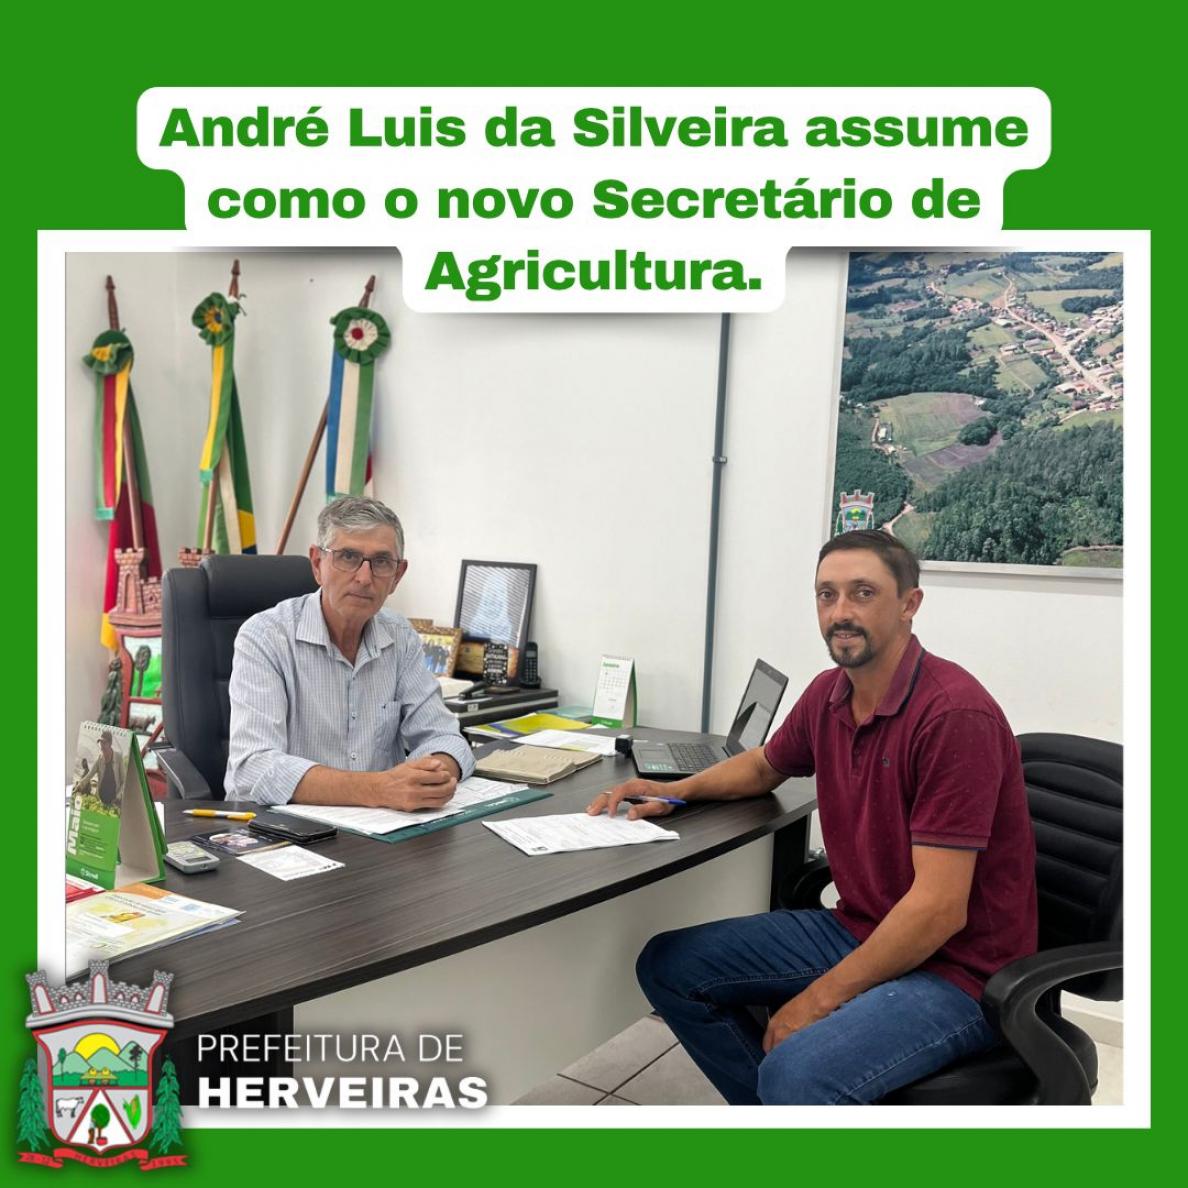 André Luis da Silveira novo Secretário de Agricultura